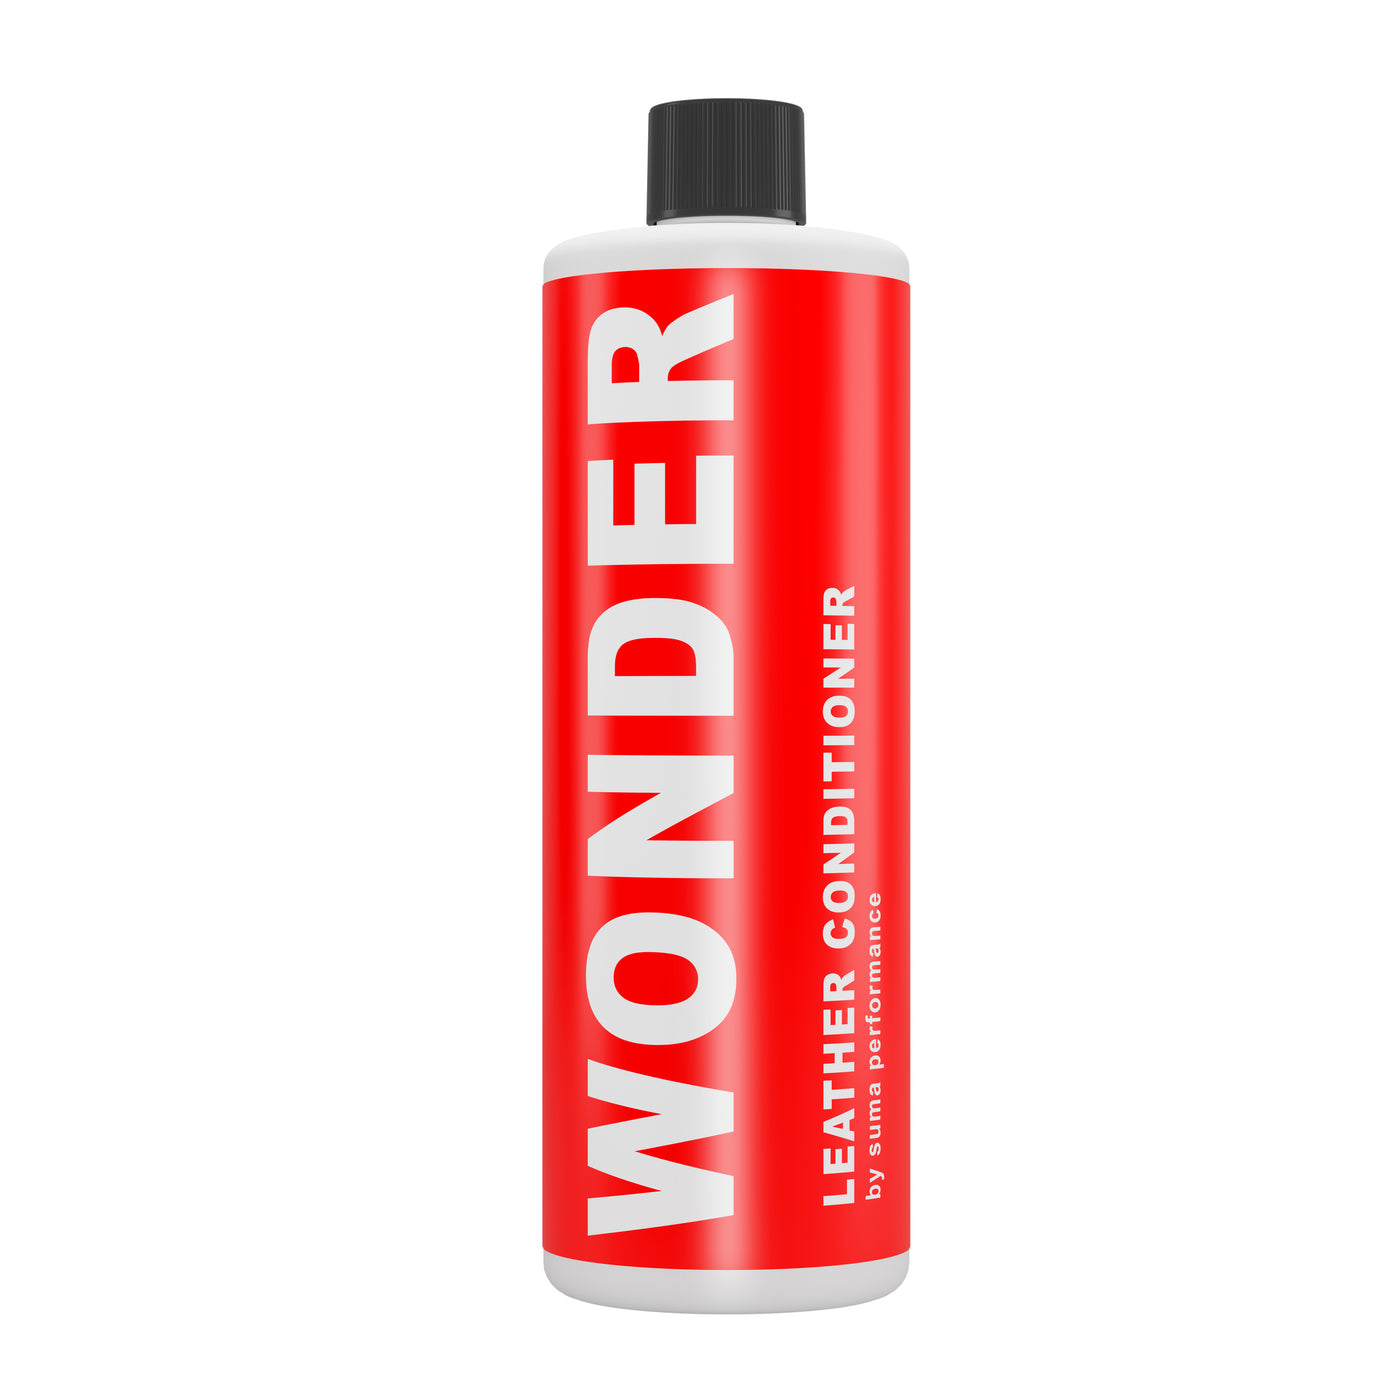 WONDER- Leather Conditioner